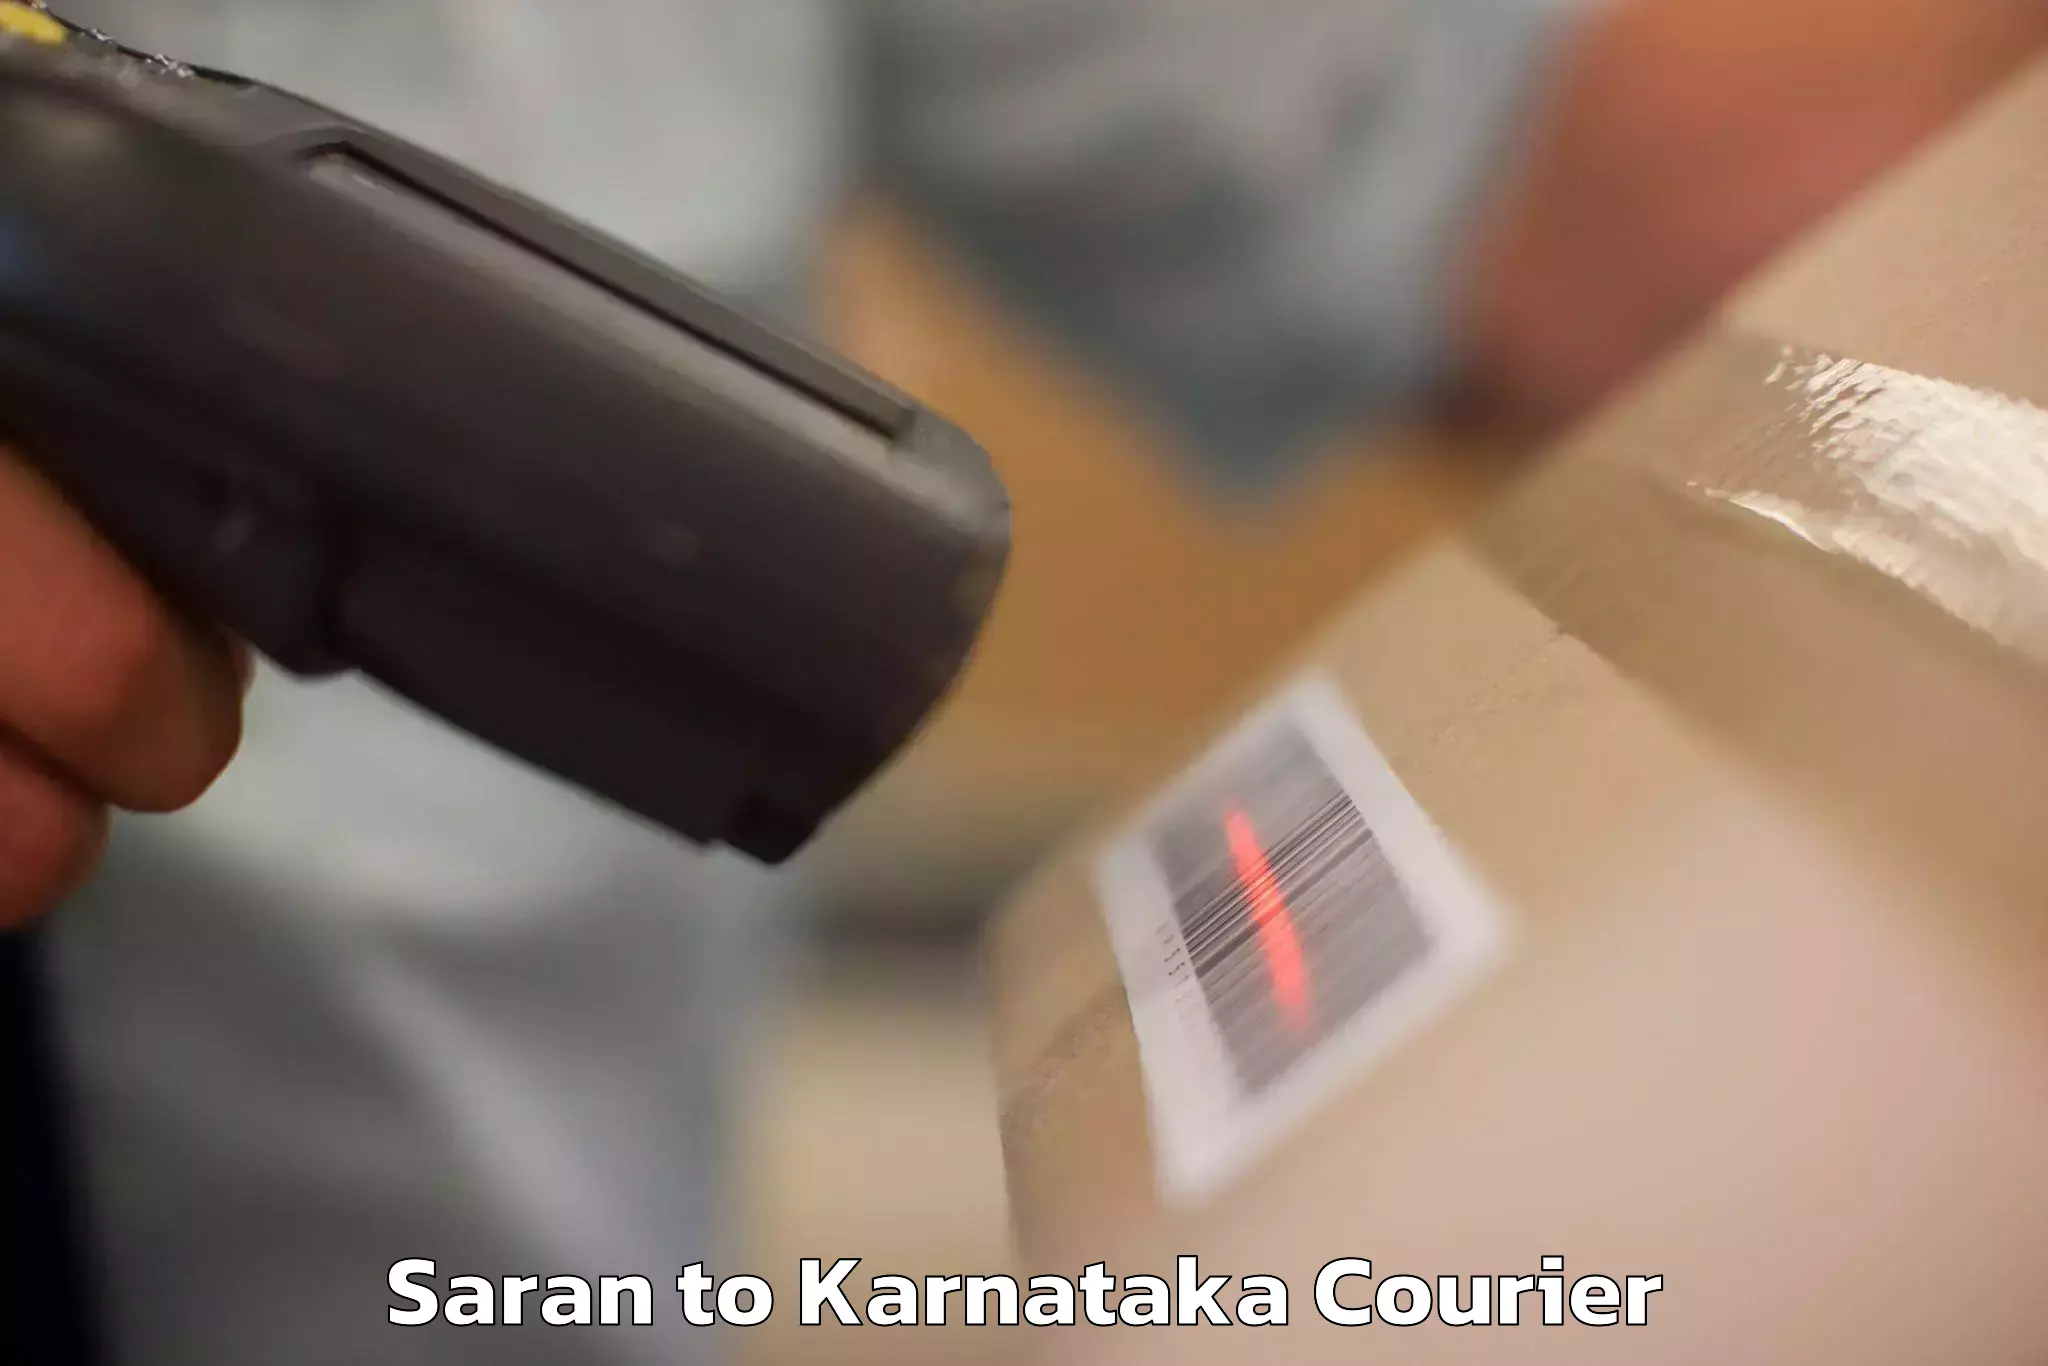 Baggage transport scheduler Saran to Karnataka